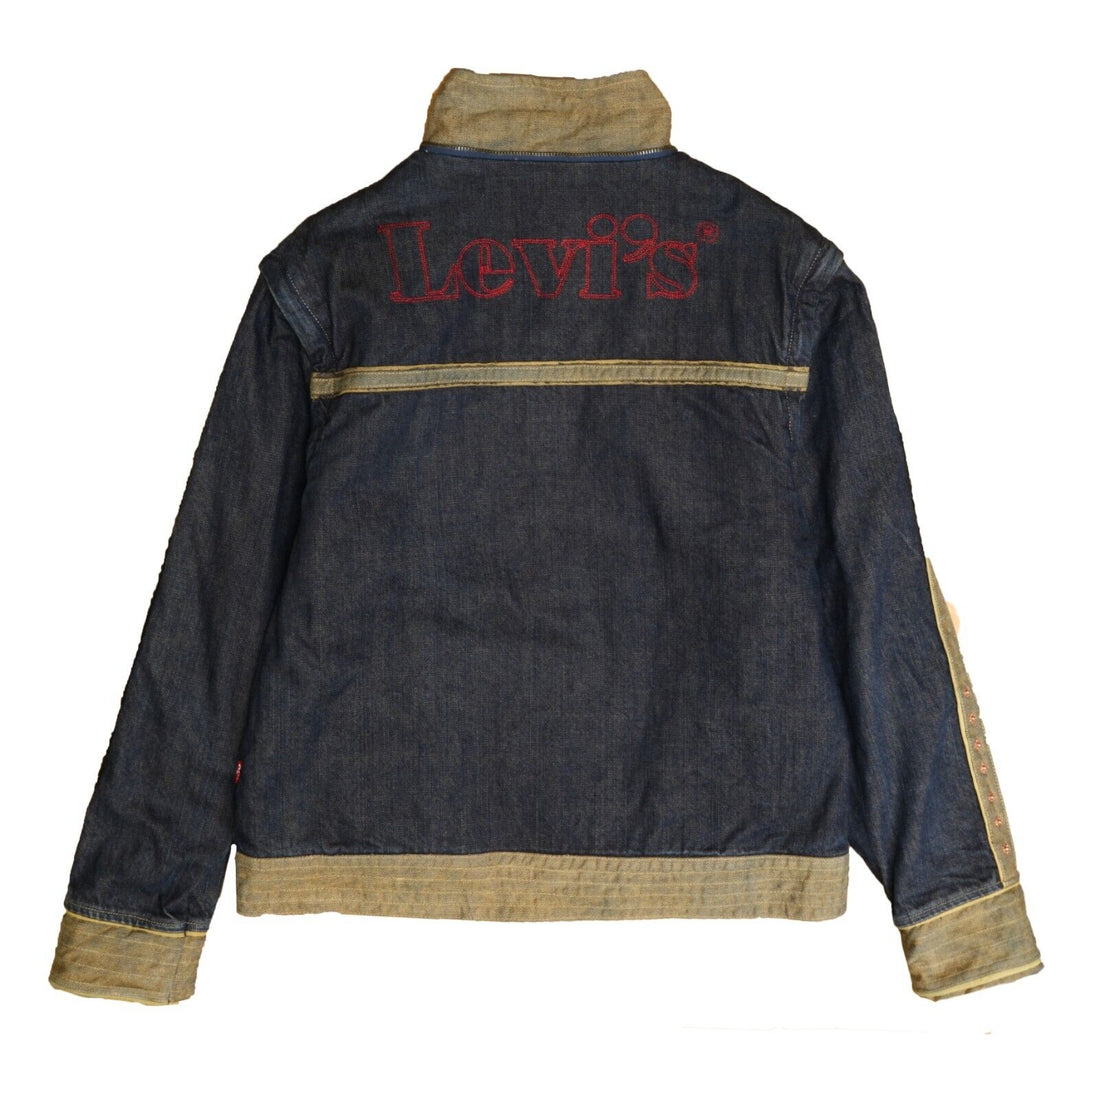 Levi Strauss & Co Denim Trucker Jacket Size Medium Embroidered